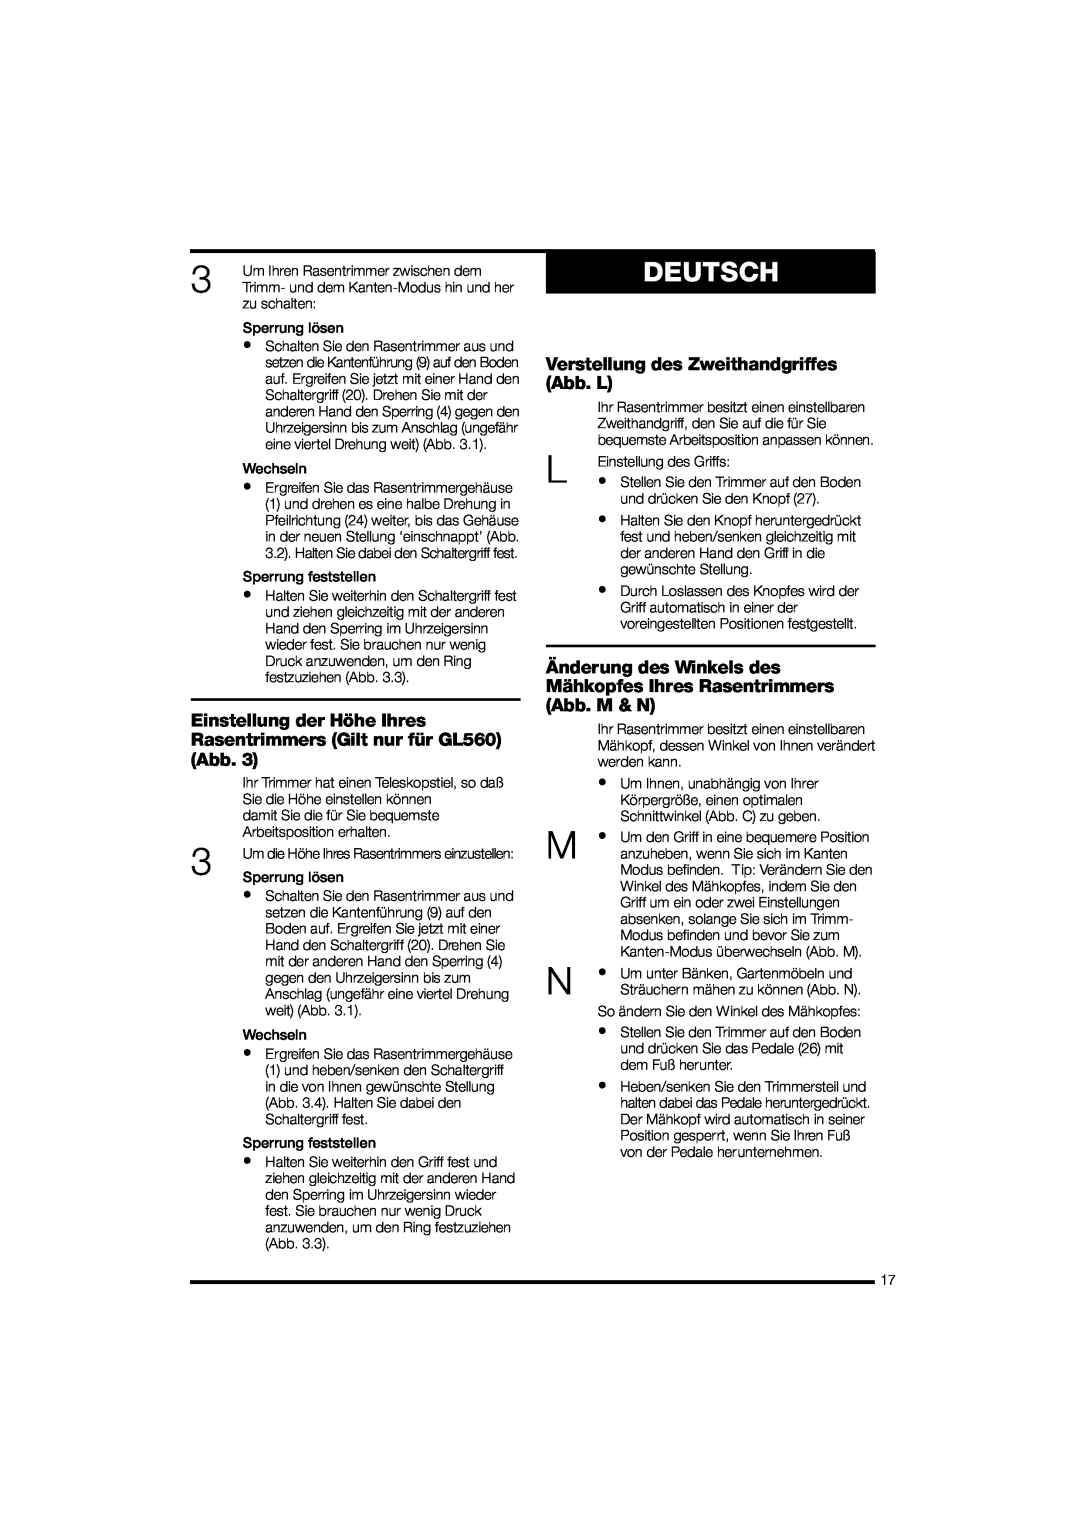 Black & Decker GL570 instruction manual Verstellung des Zweithandgriffes Abb. L, Deutsch 